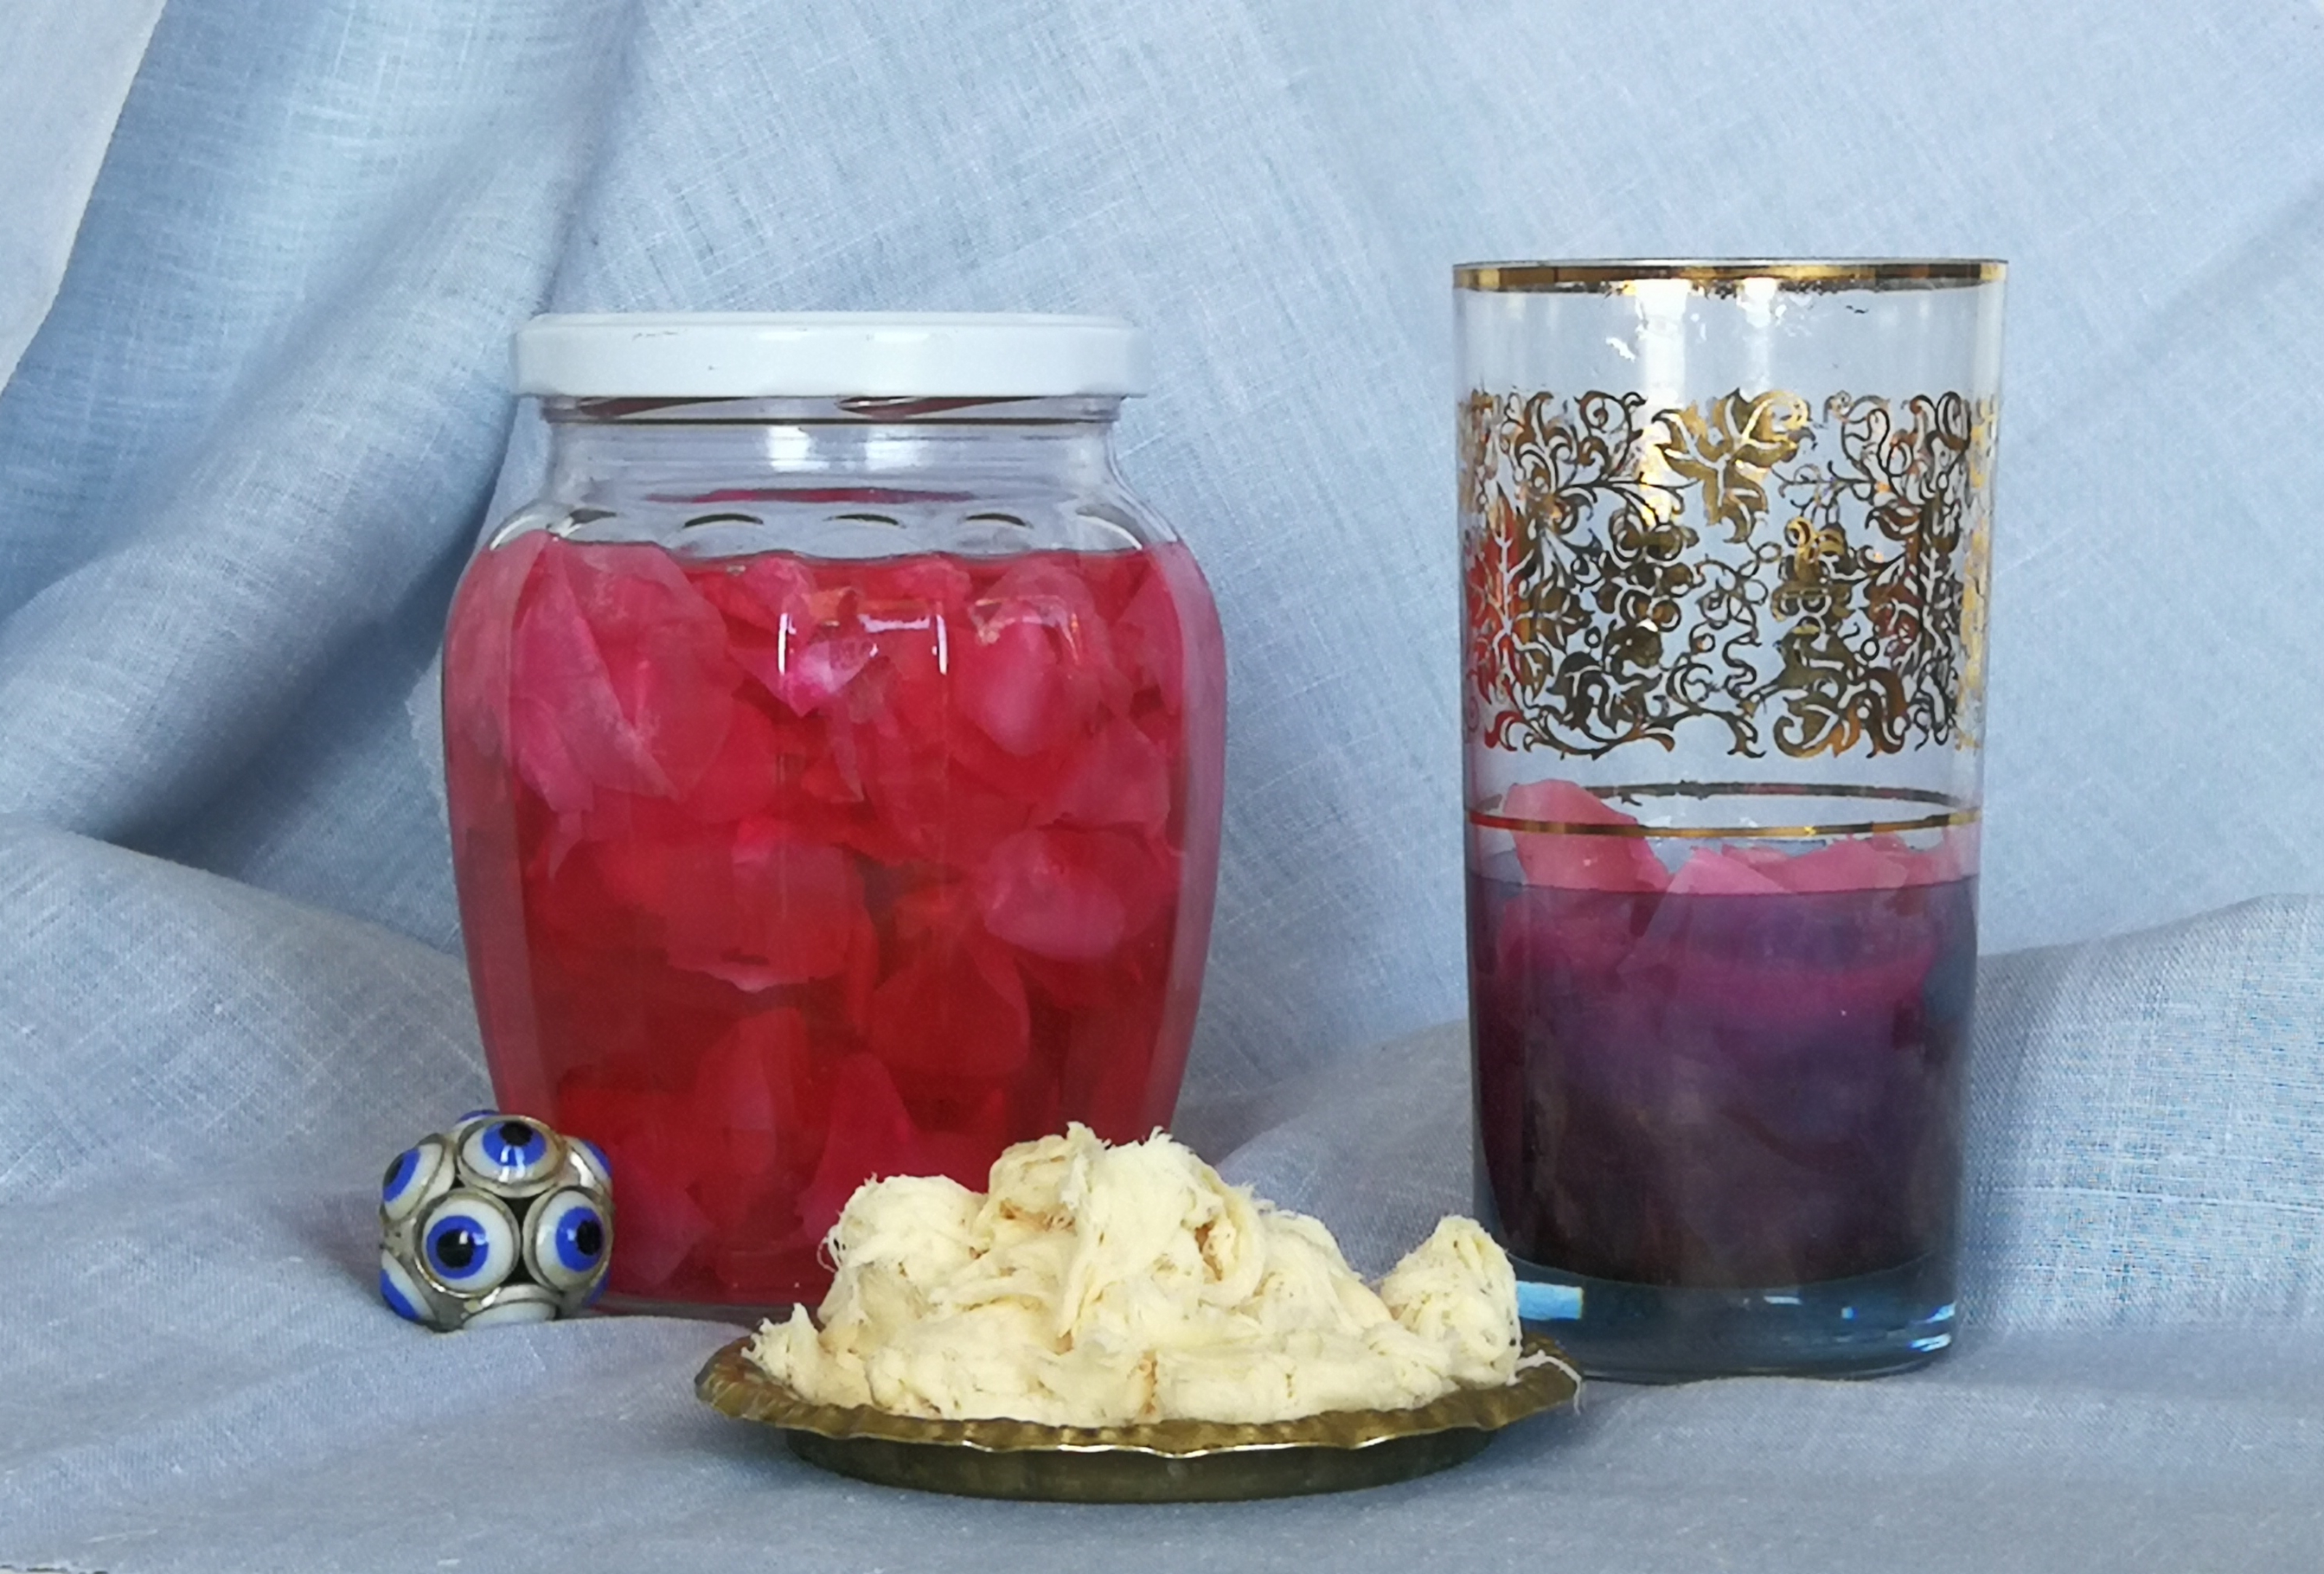 szerbet różany w słoiku, szklanka i pismanye na talerzyku